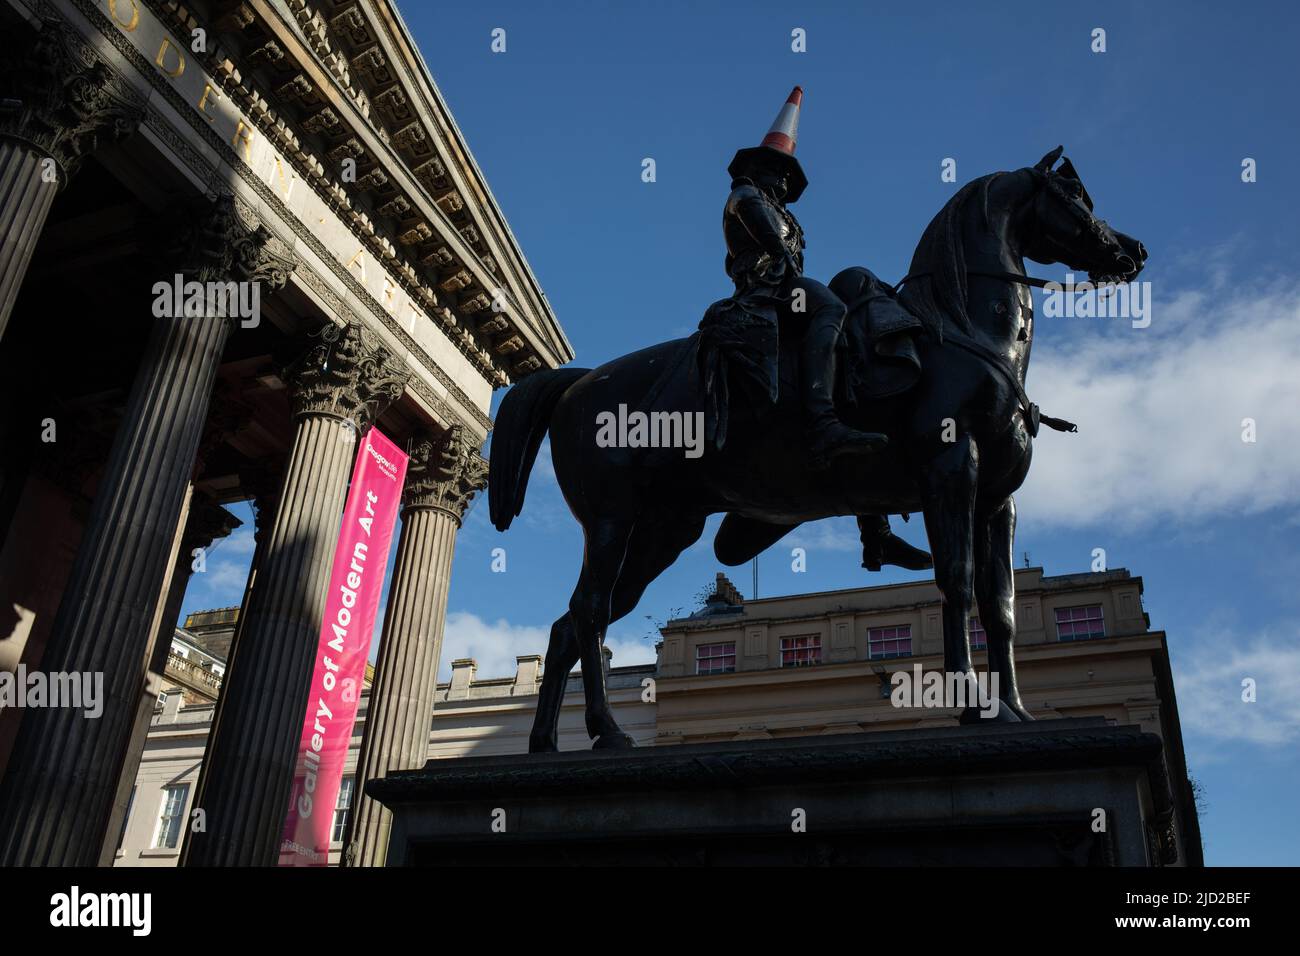 Statue du duc de Wellington avec son chapeau de cornet de police emblématique, devant la Galerie d'art moderne, à Glasgow, Écosse, le 8 avril 2022. N55°51,597' W4°15,119' Banque D'Images